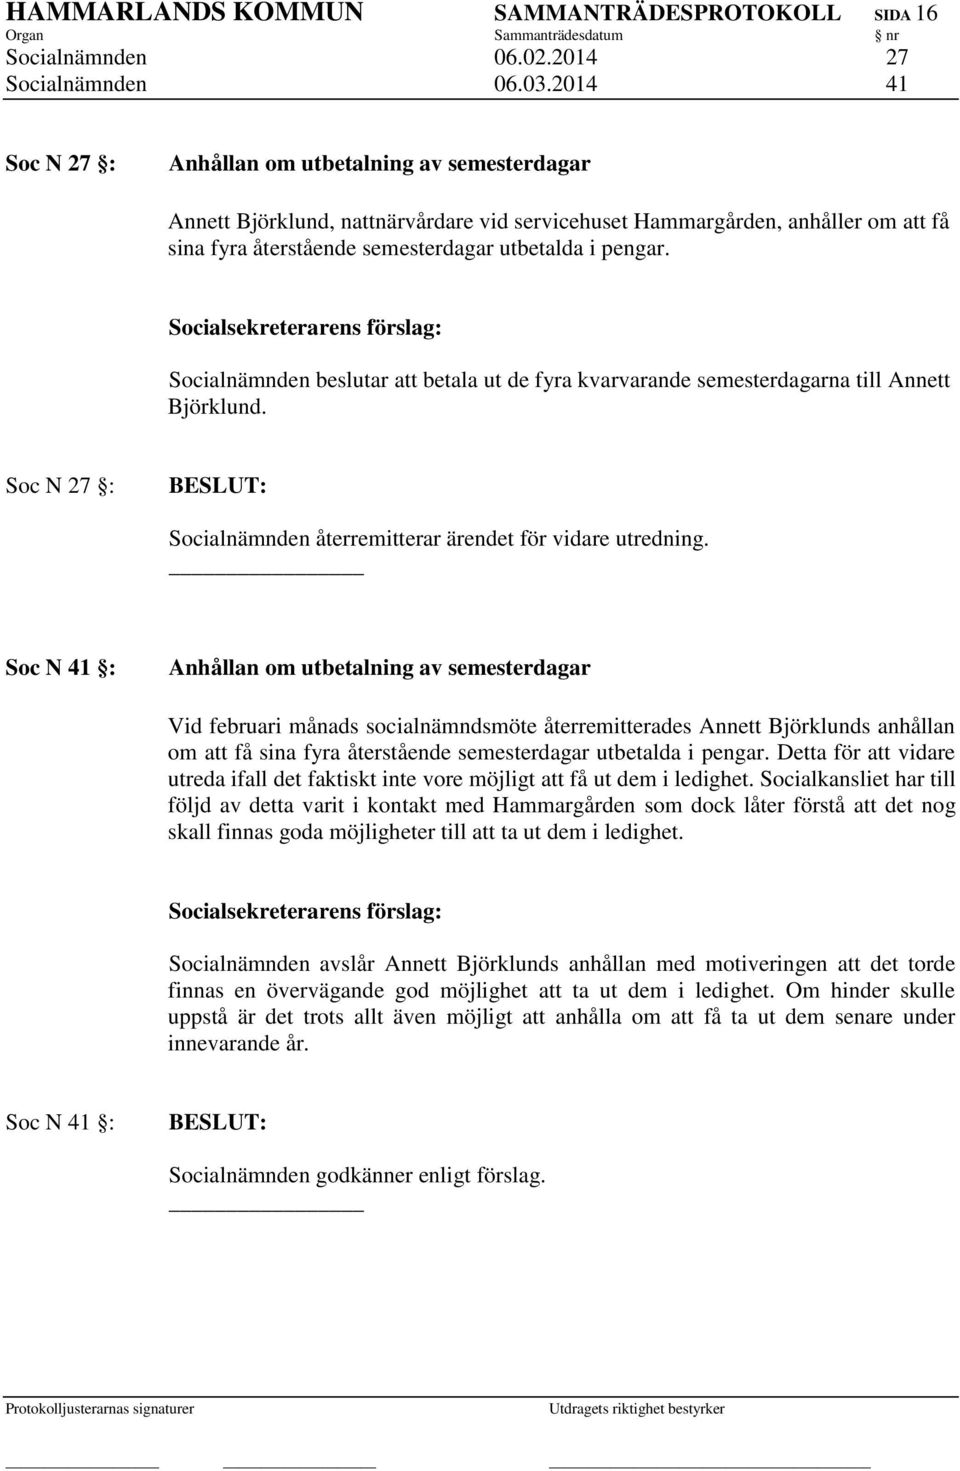 Socialnämnden beslutar att betala ut de fyra kvarvarande semesterdagarna till Annett Björklund. Soc N 27 : Socialnämnden återremitterar ärendet för vidare utredning.